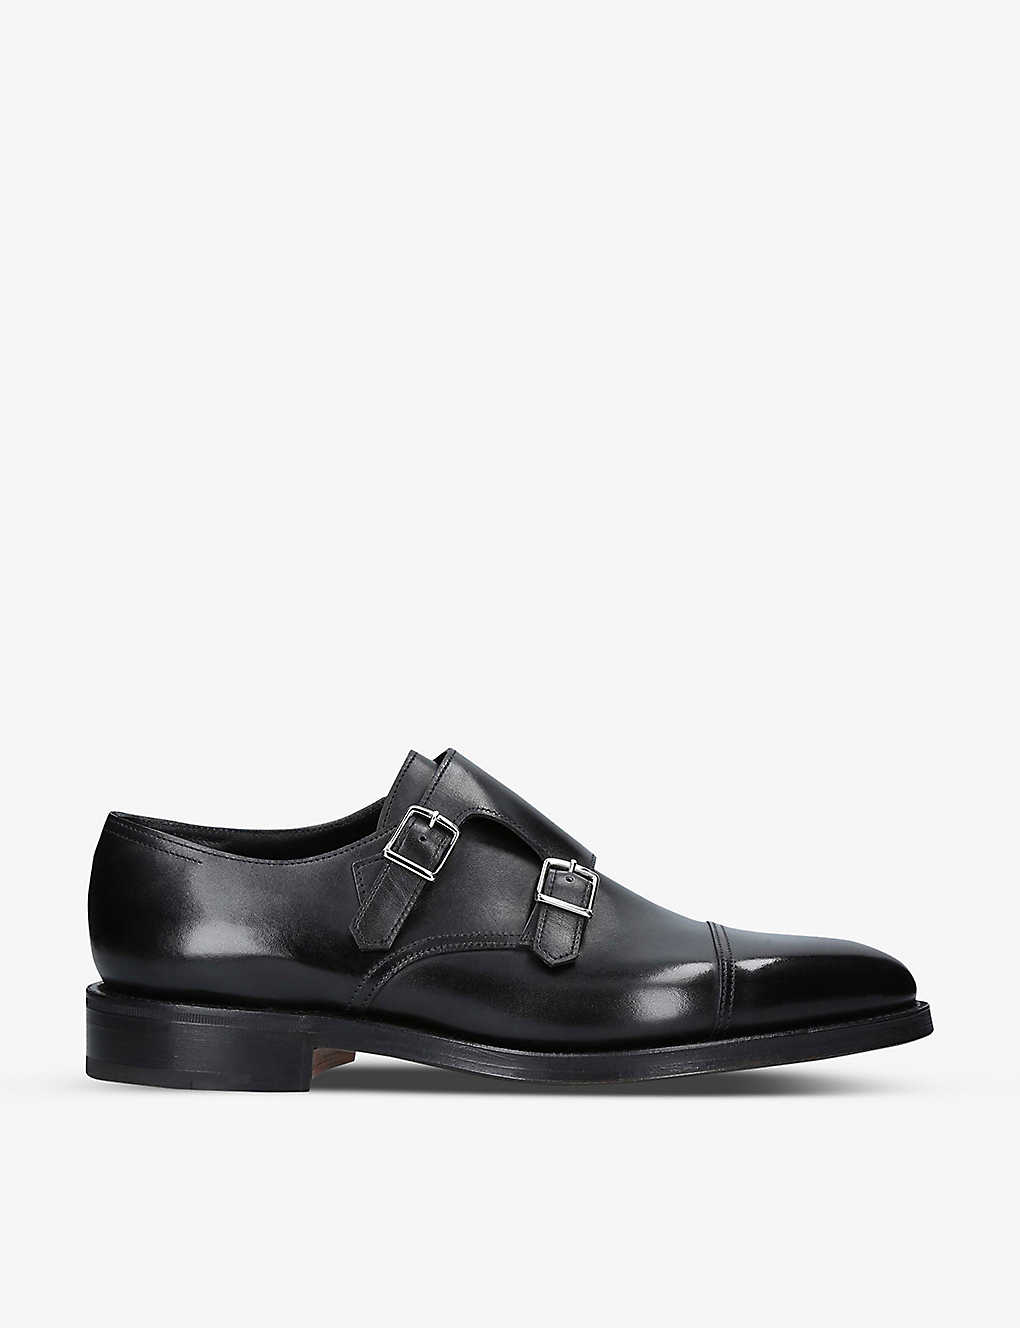 Shop John Lobb Men's Black William Double-buckle Leather Monk Shoes